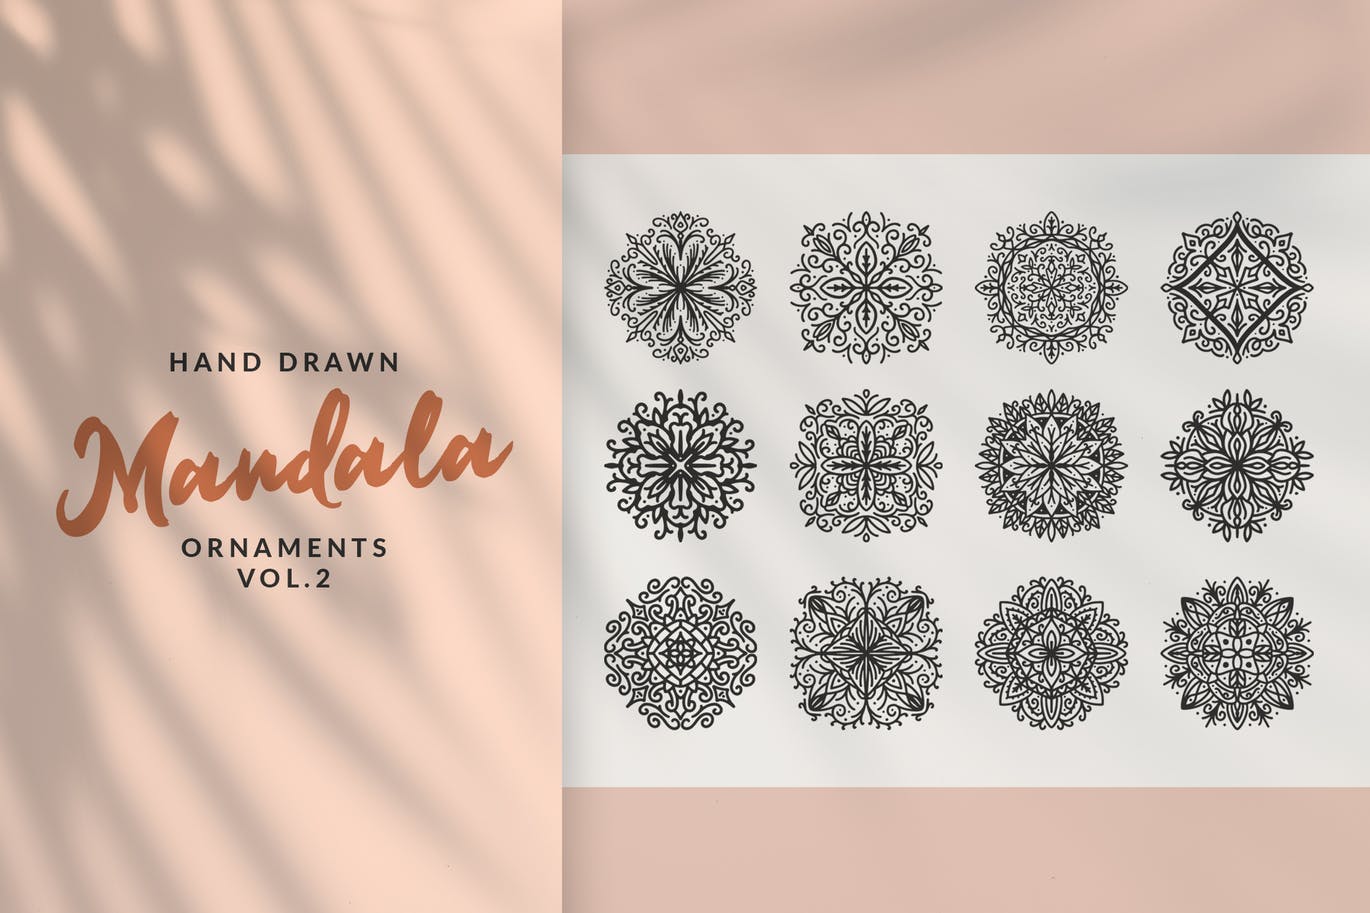 手工绘制曼陀罗花卉矢量图案素材v2 Hand Drawn Mandala Ornaments Vol.2插图